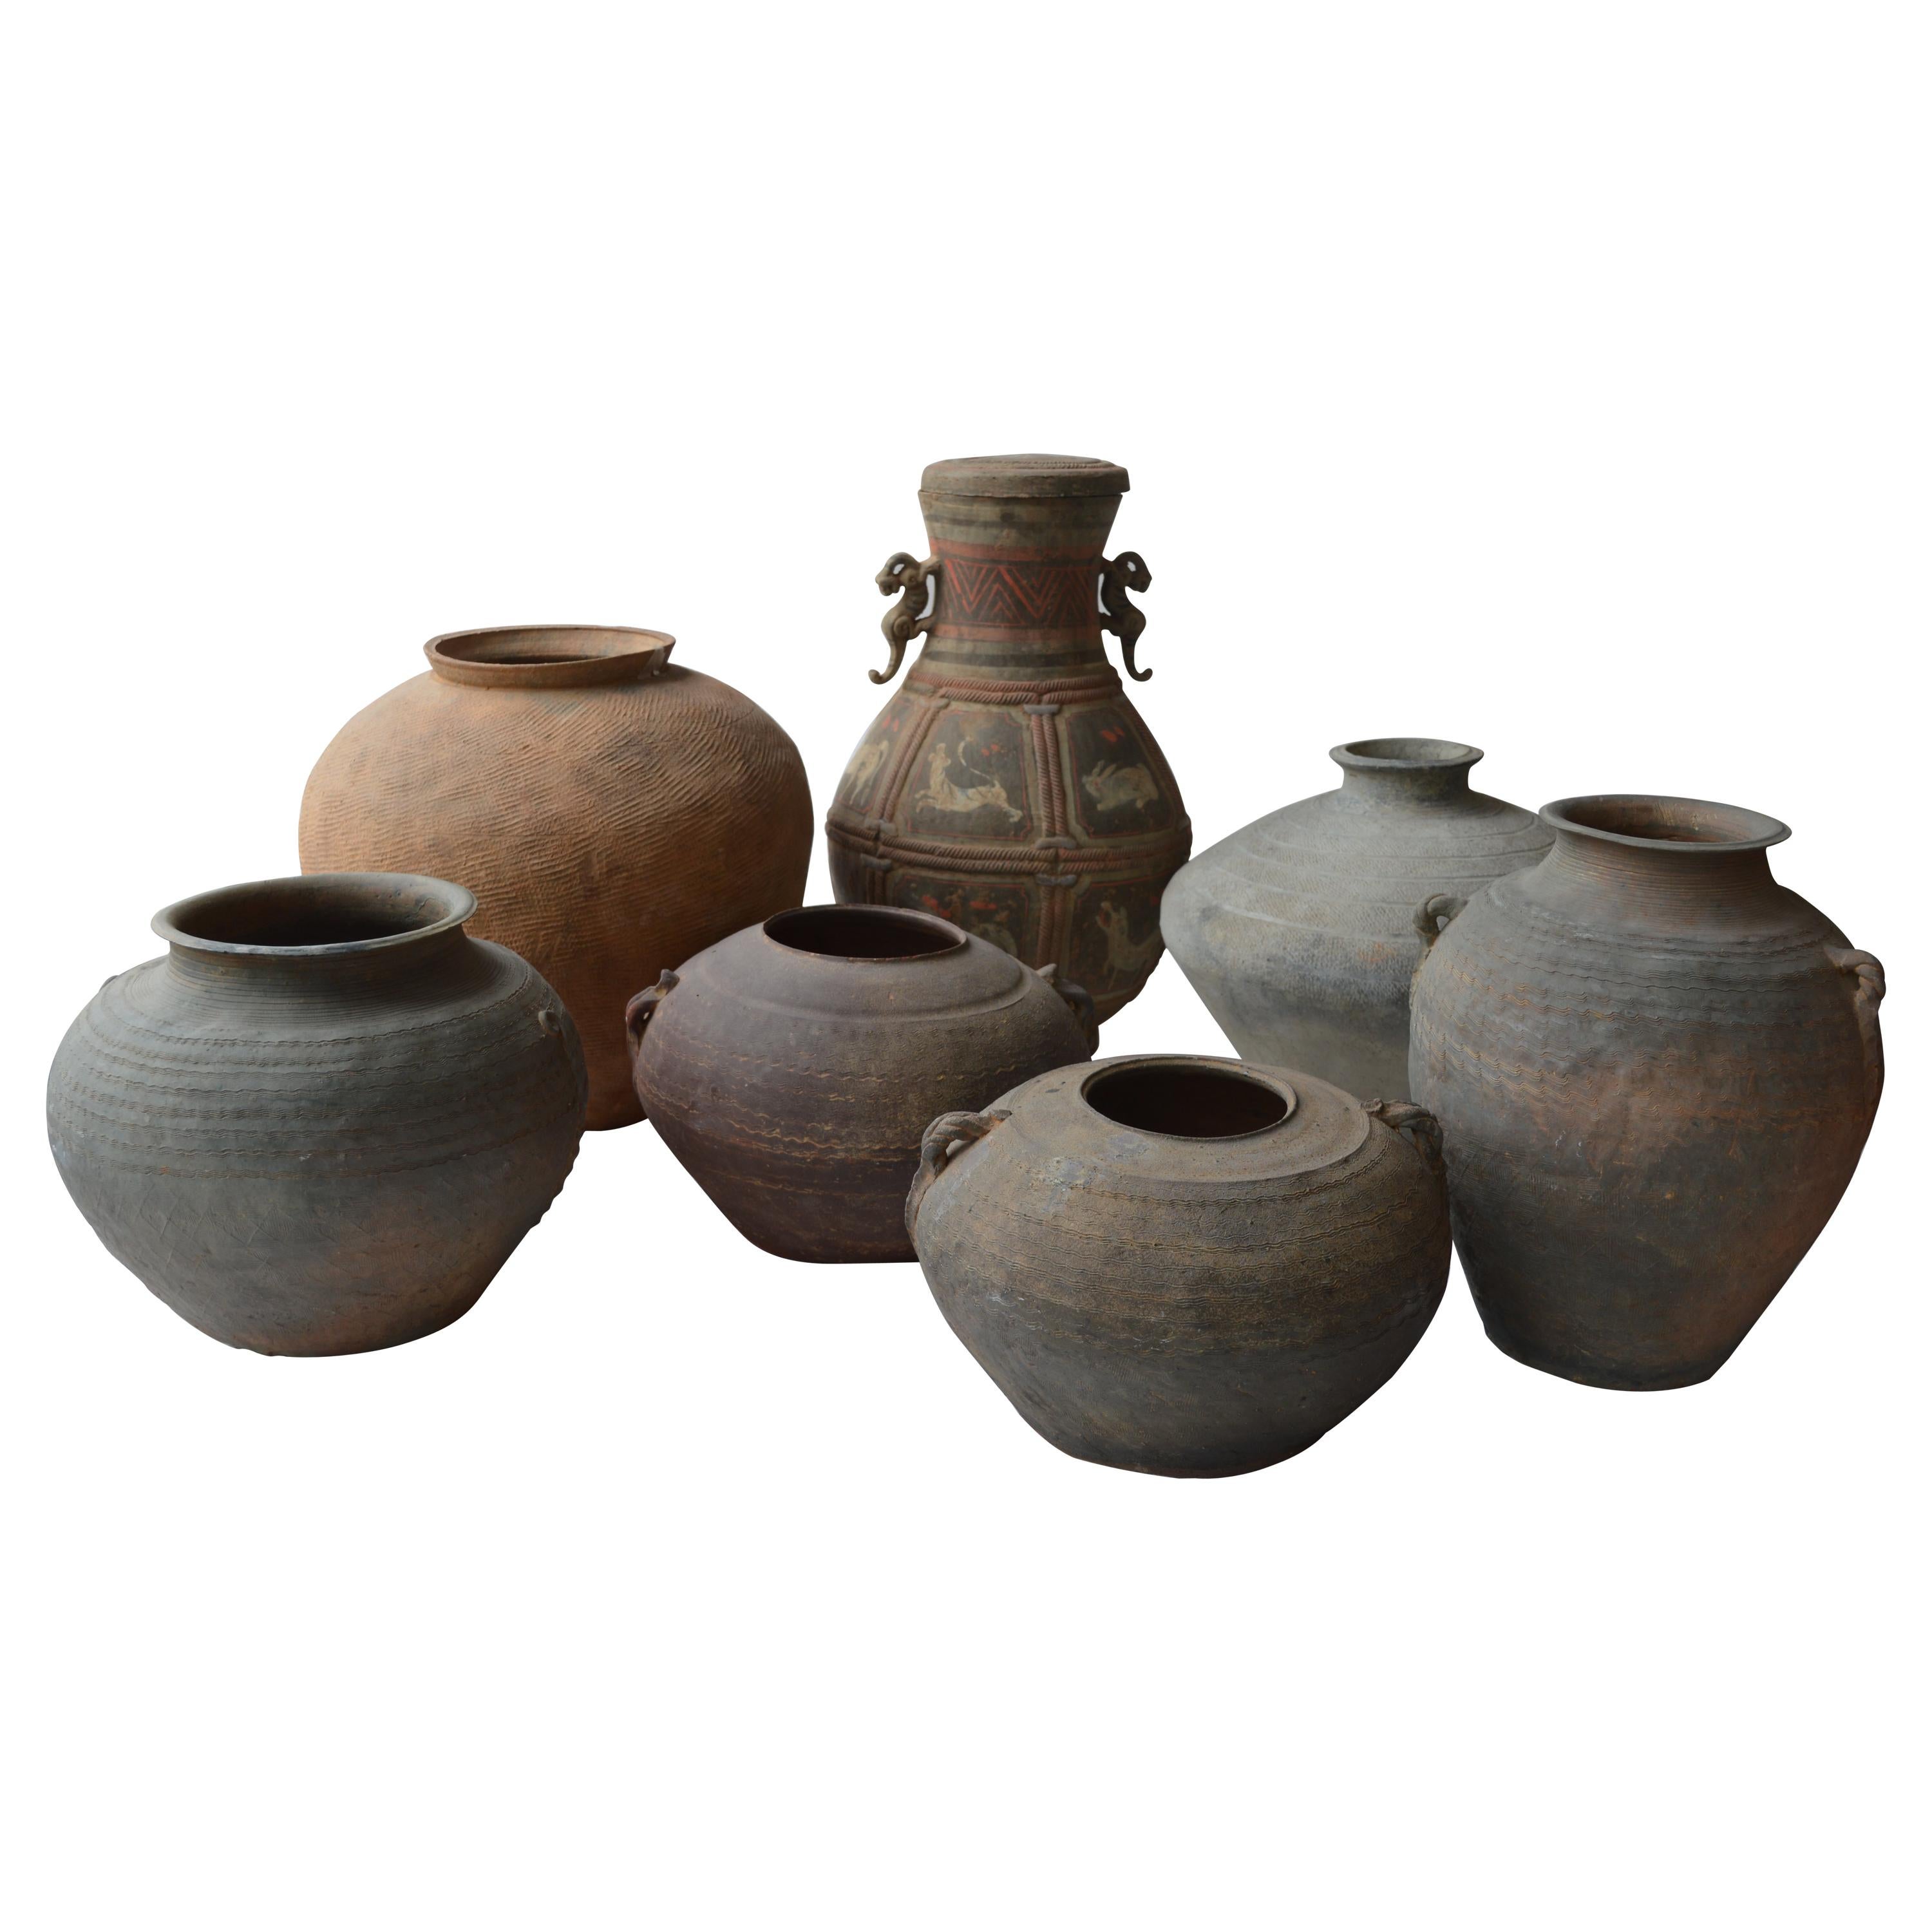 Set of Seven Zhou Dynasty Vases